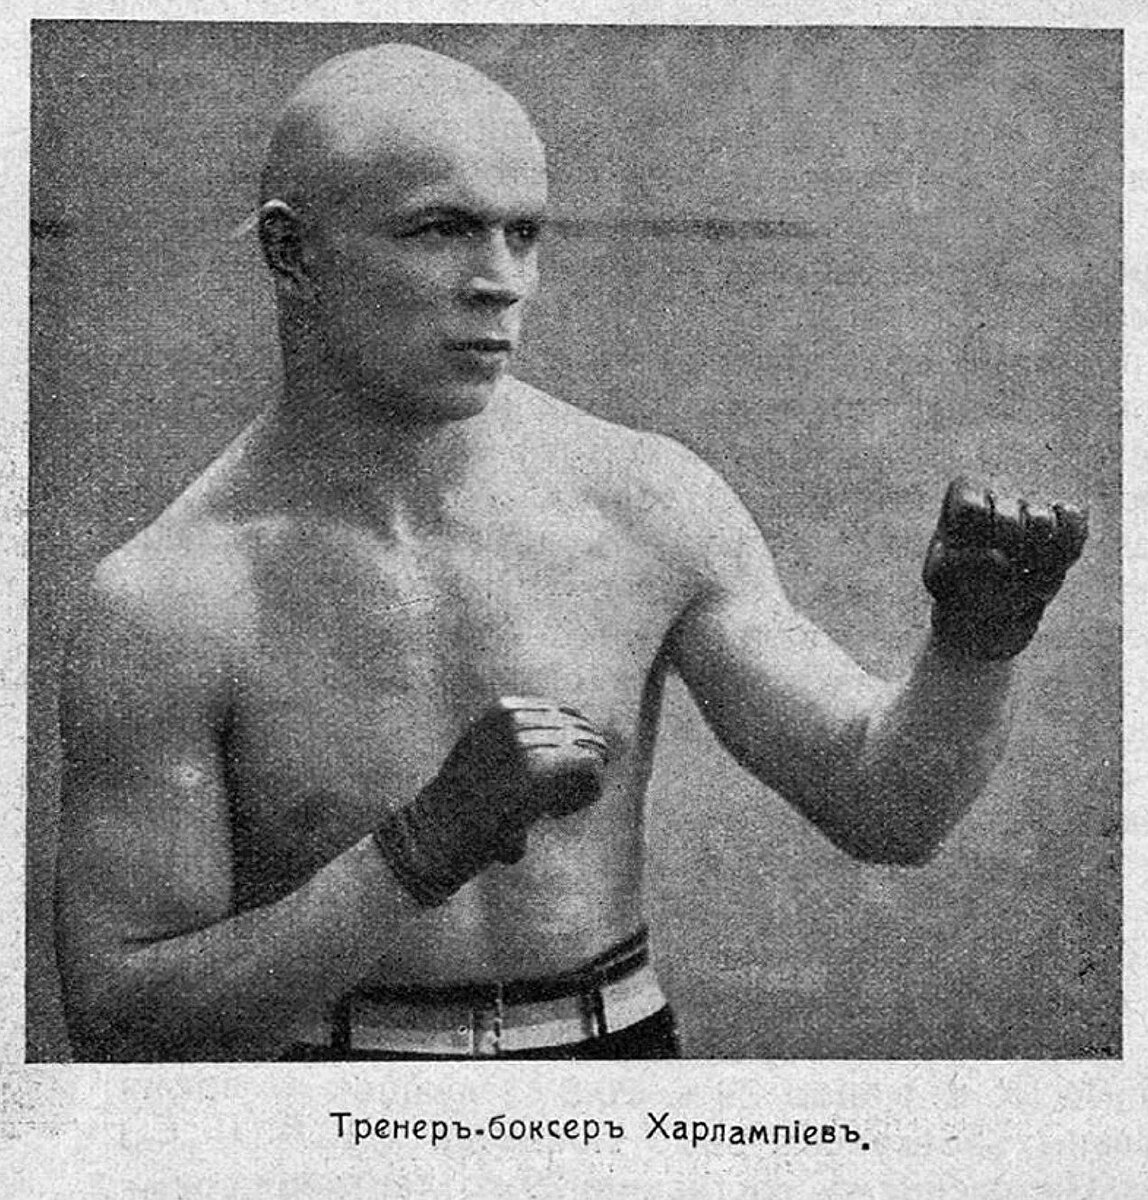 Аркадий Георгиевич Харлампиев, отец Анатолия Харлампиева, 1905 год. Фото из свободных источников.